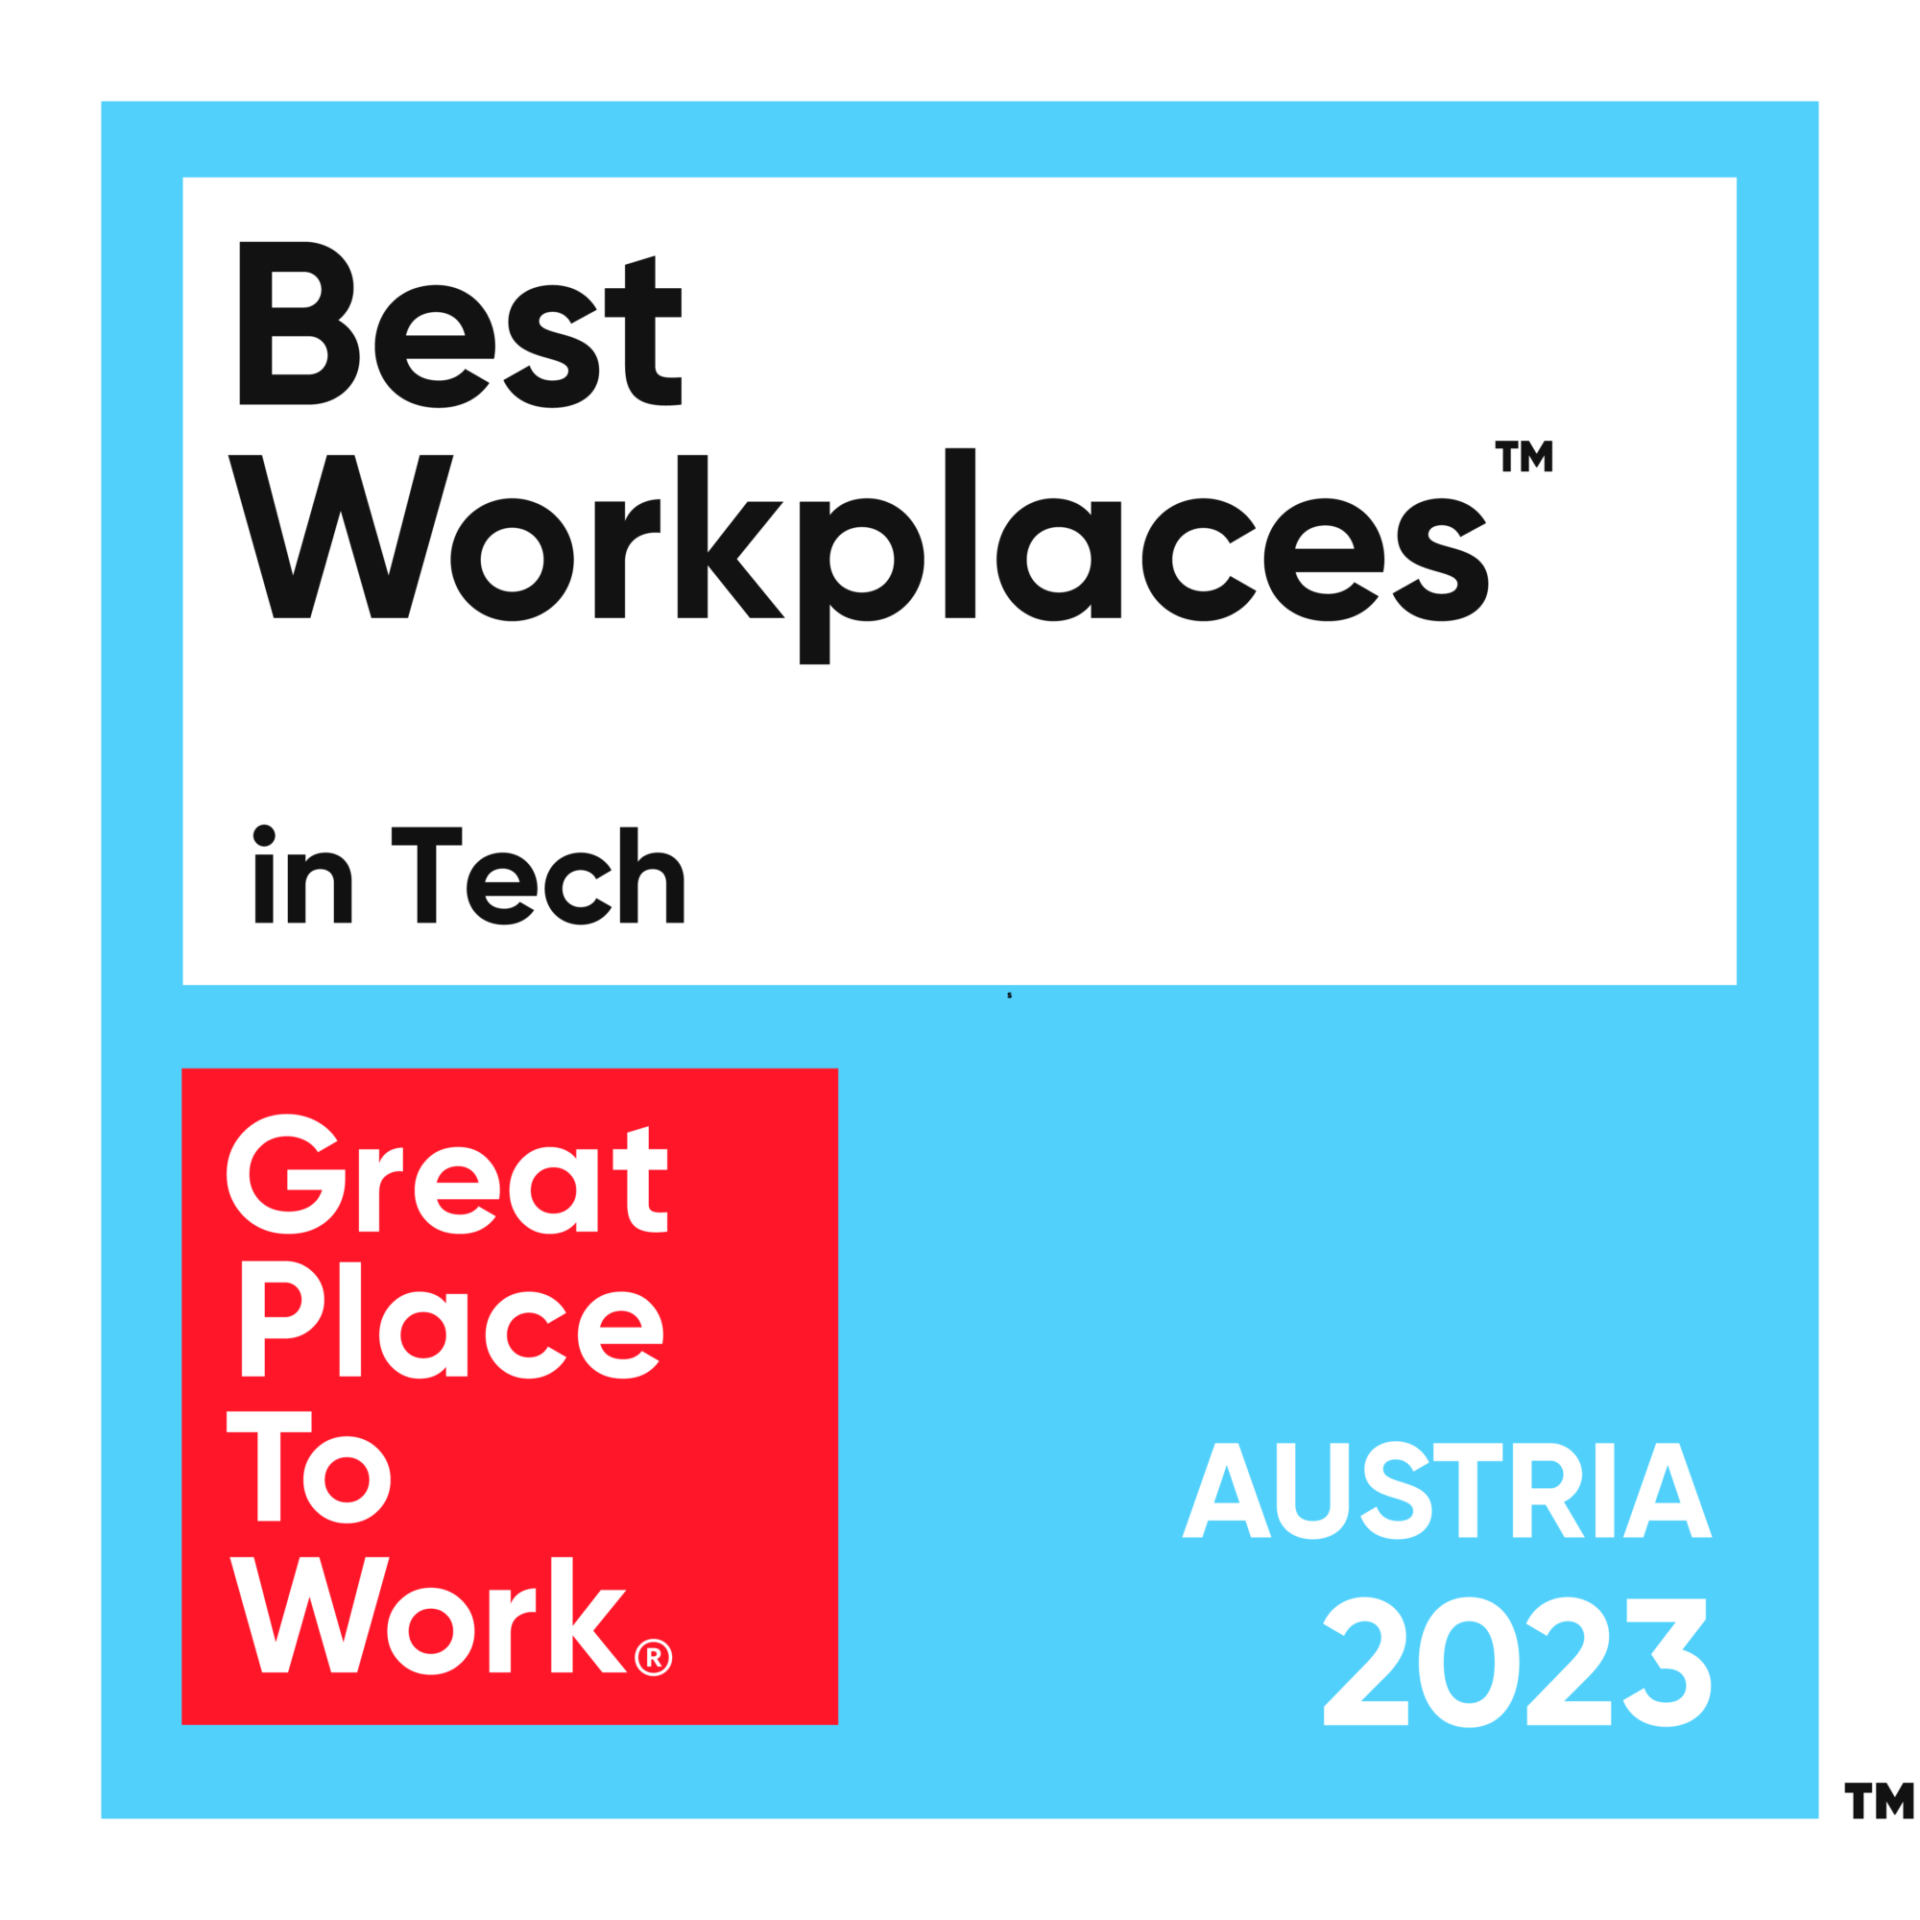 Melhores locais de trabalho em tecnologia 2023 – Áustria